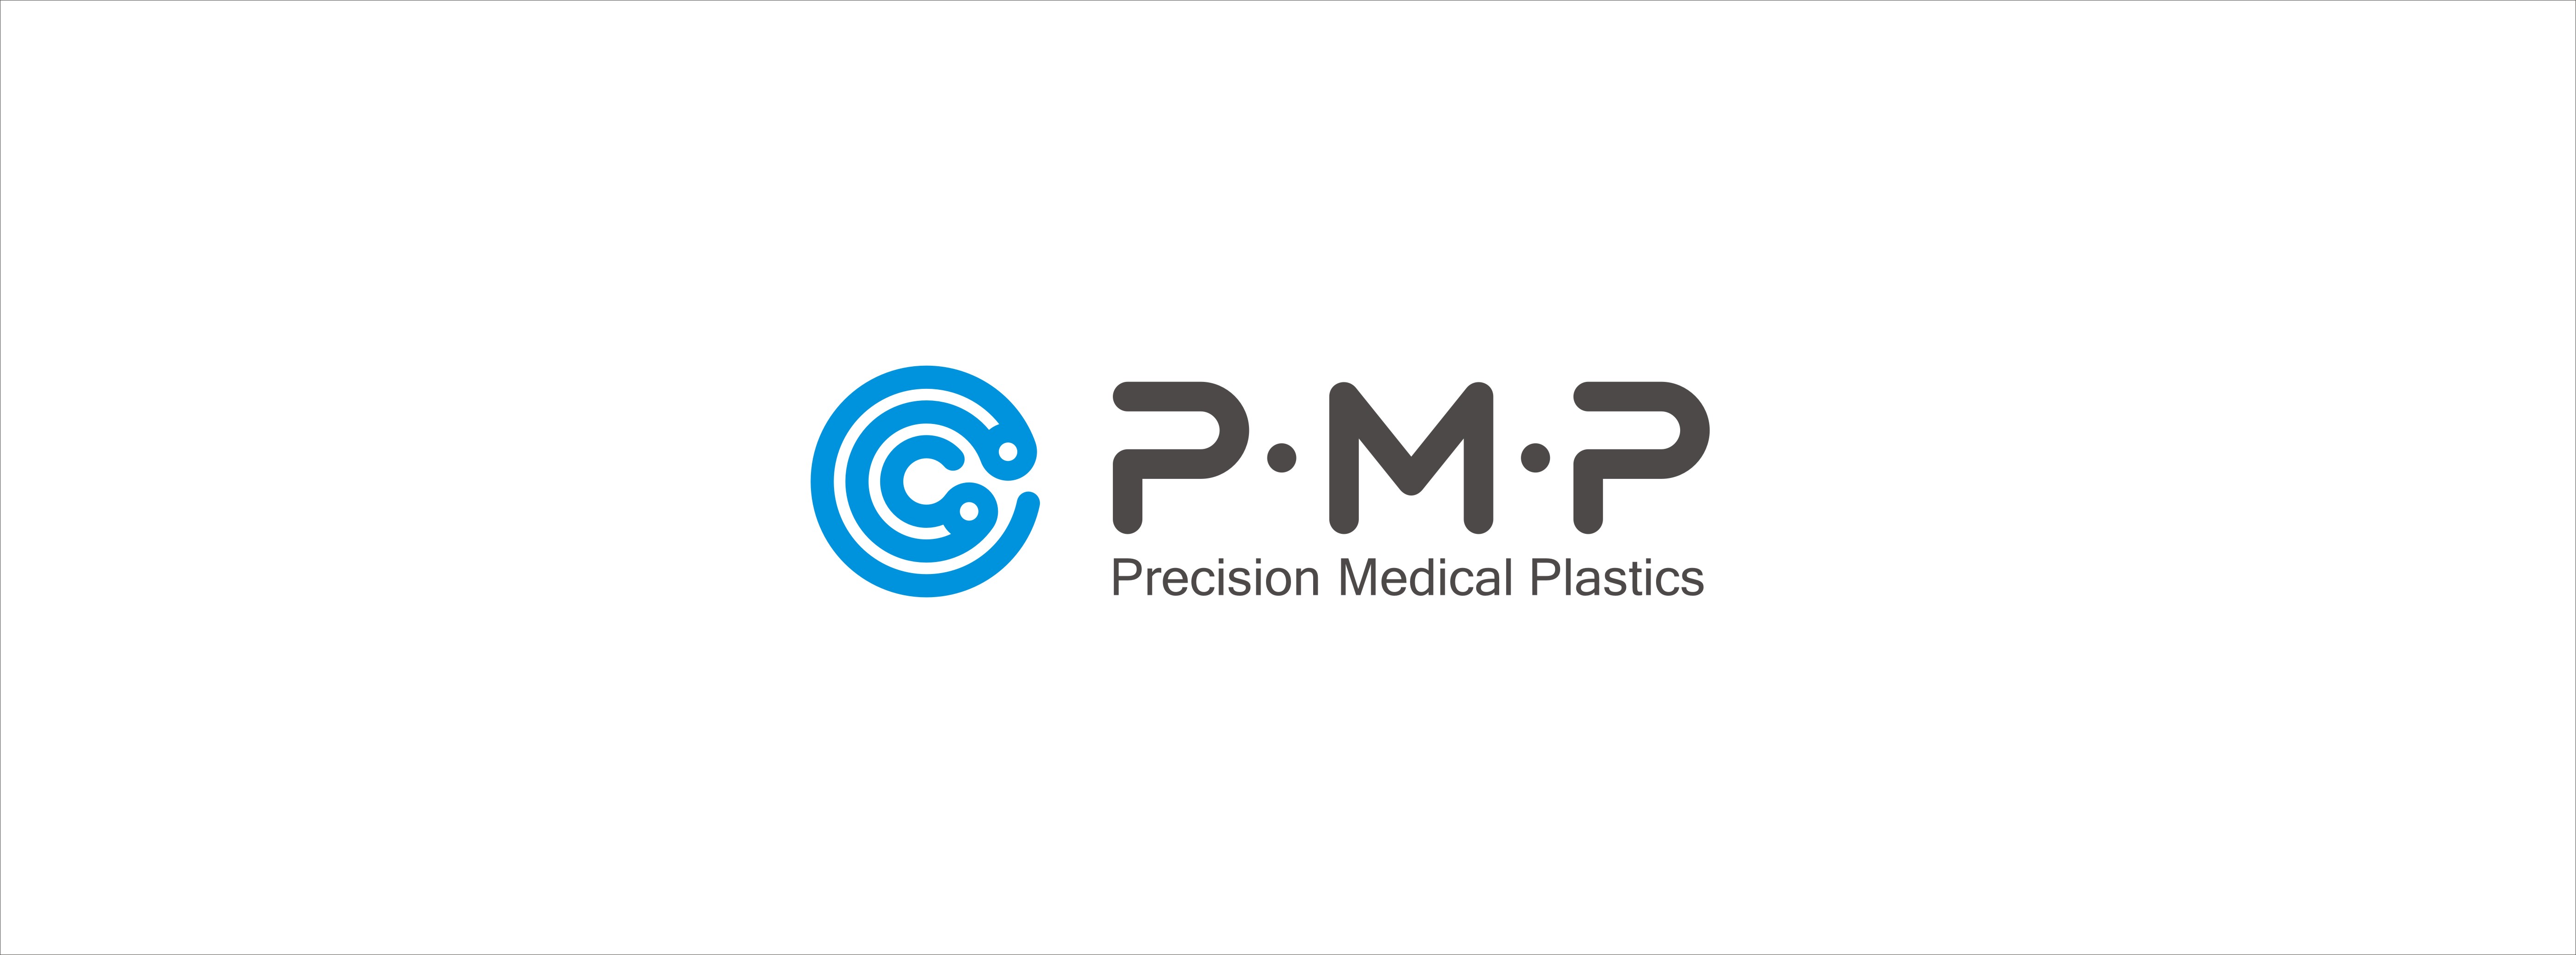 Precision Medical Plastics Ltd